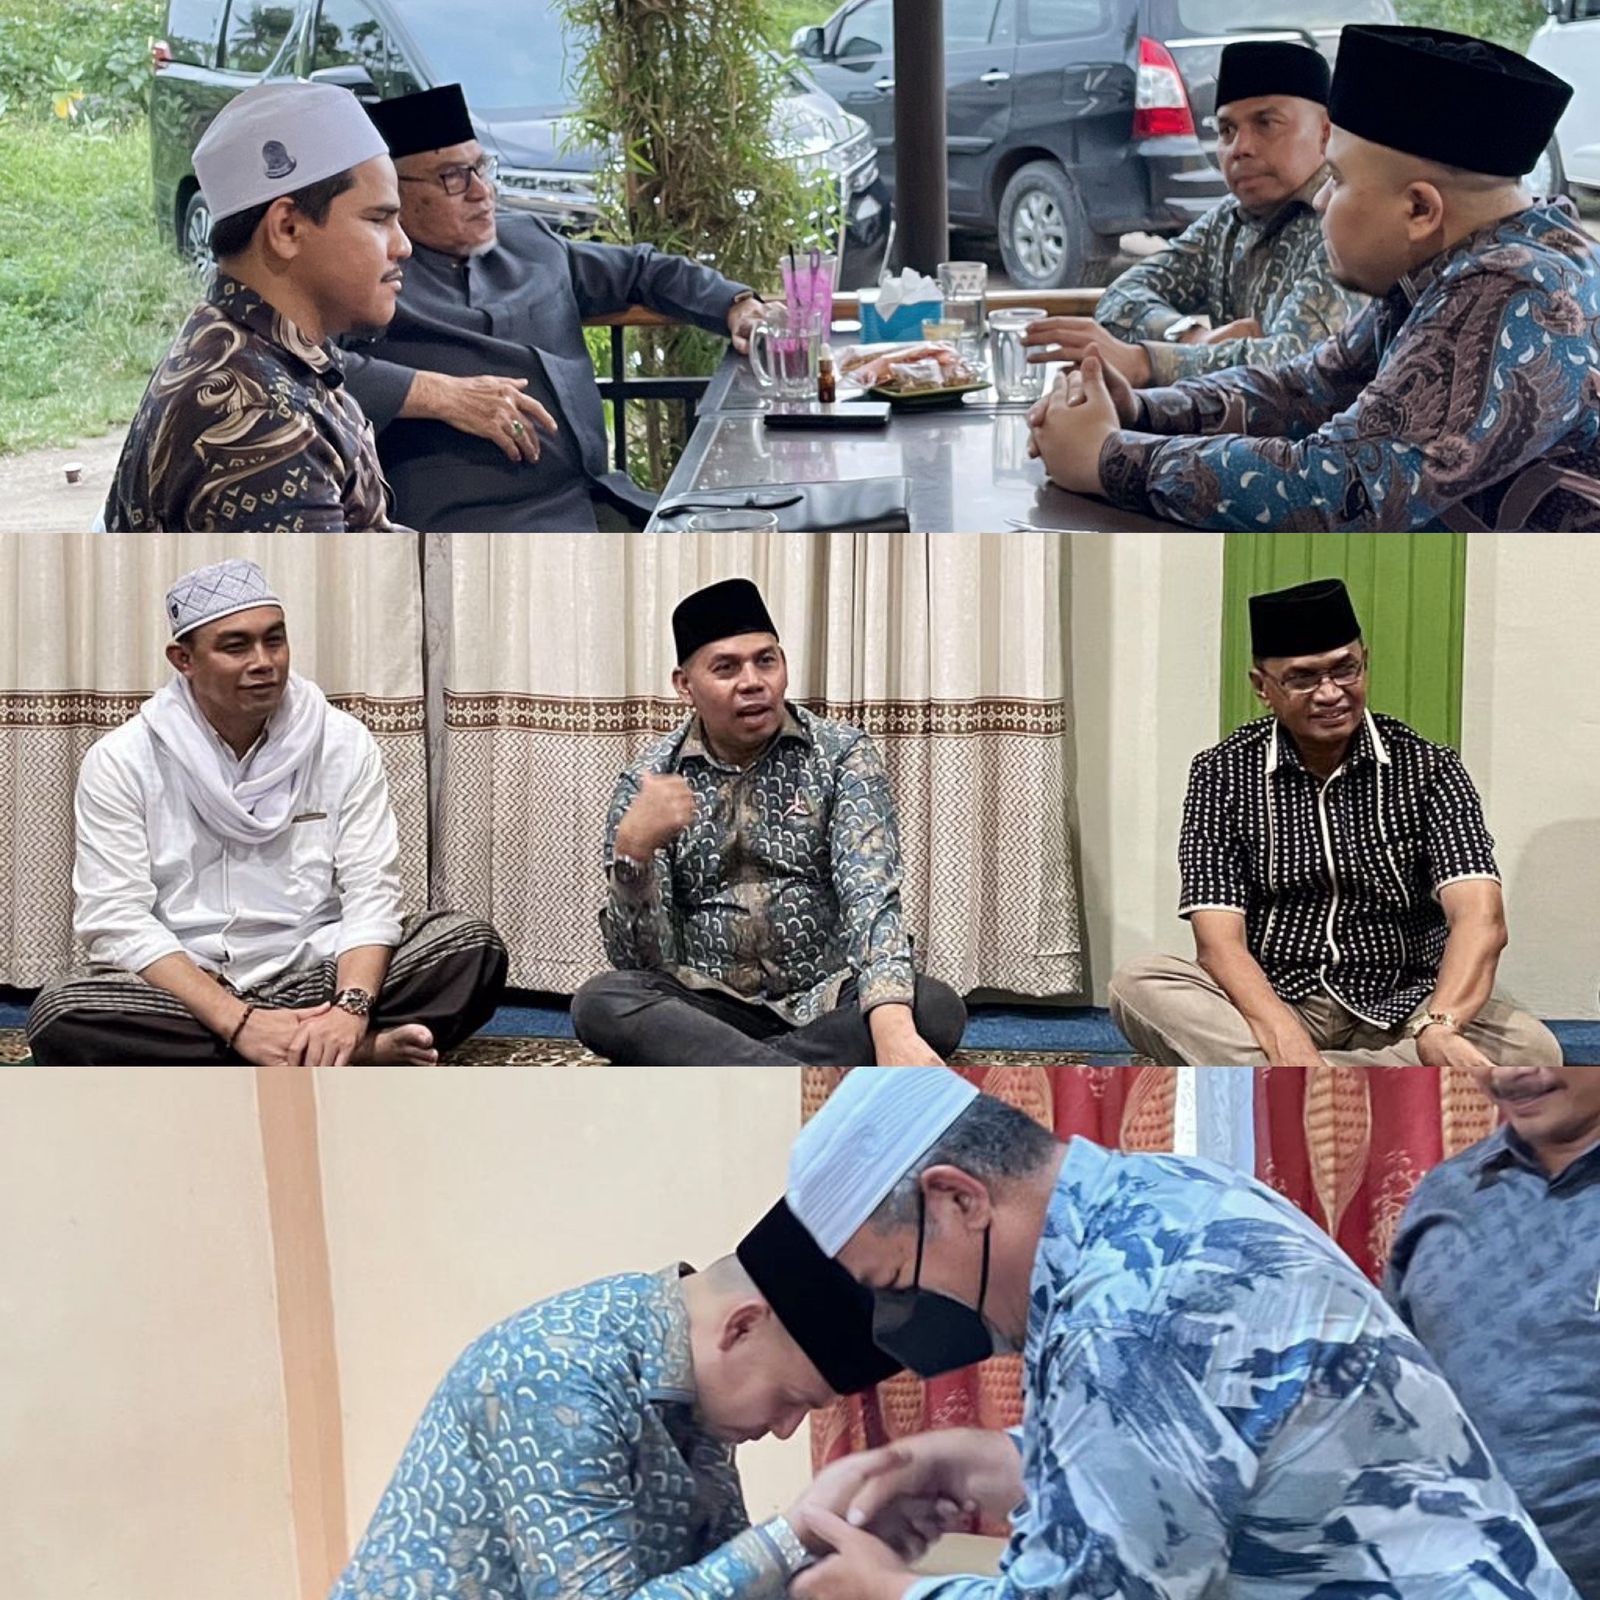 Kunjungi Ulama dan Dayah jelang Pelantikan, Ketua Demokrat Aceh: Do'a Restu Ulama Penting Bagi Kami